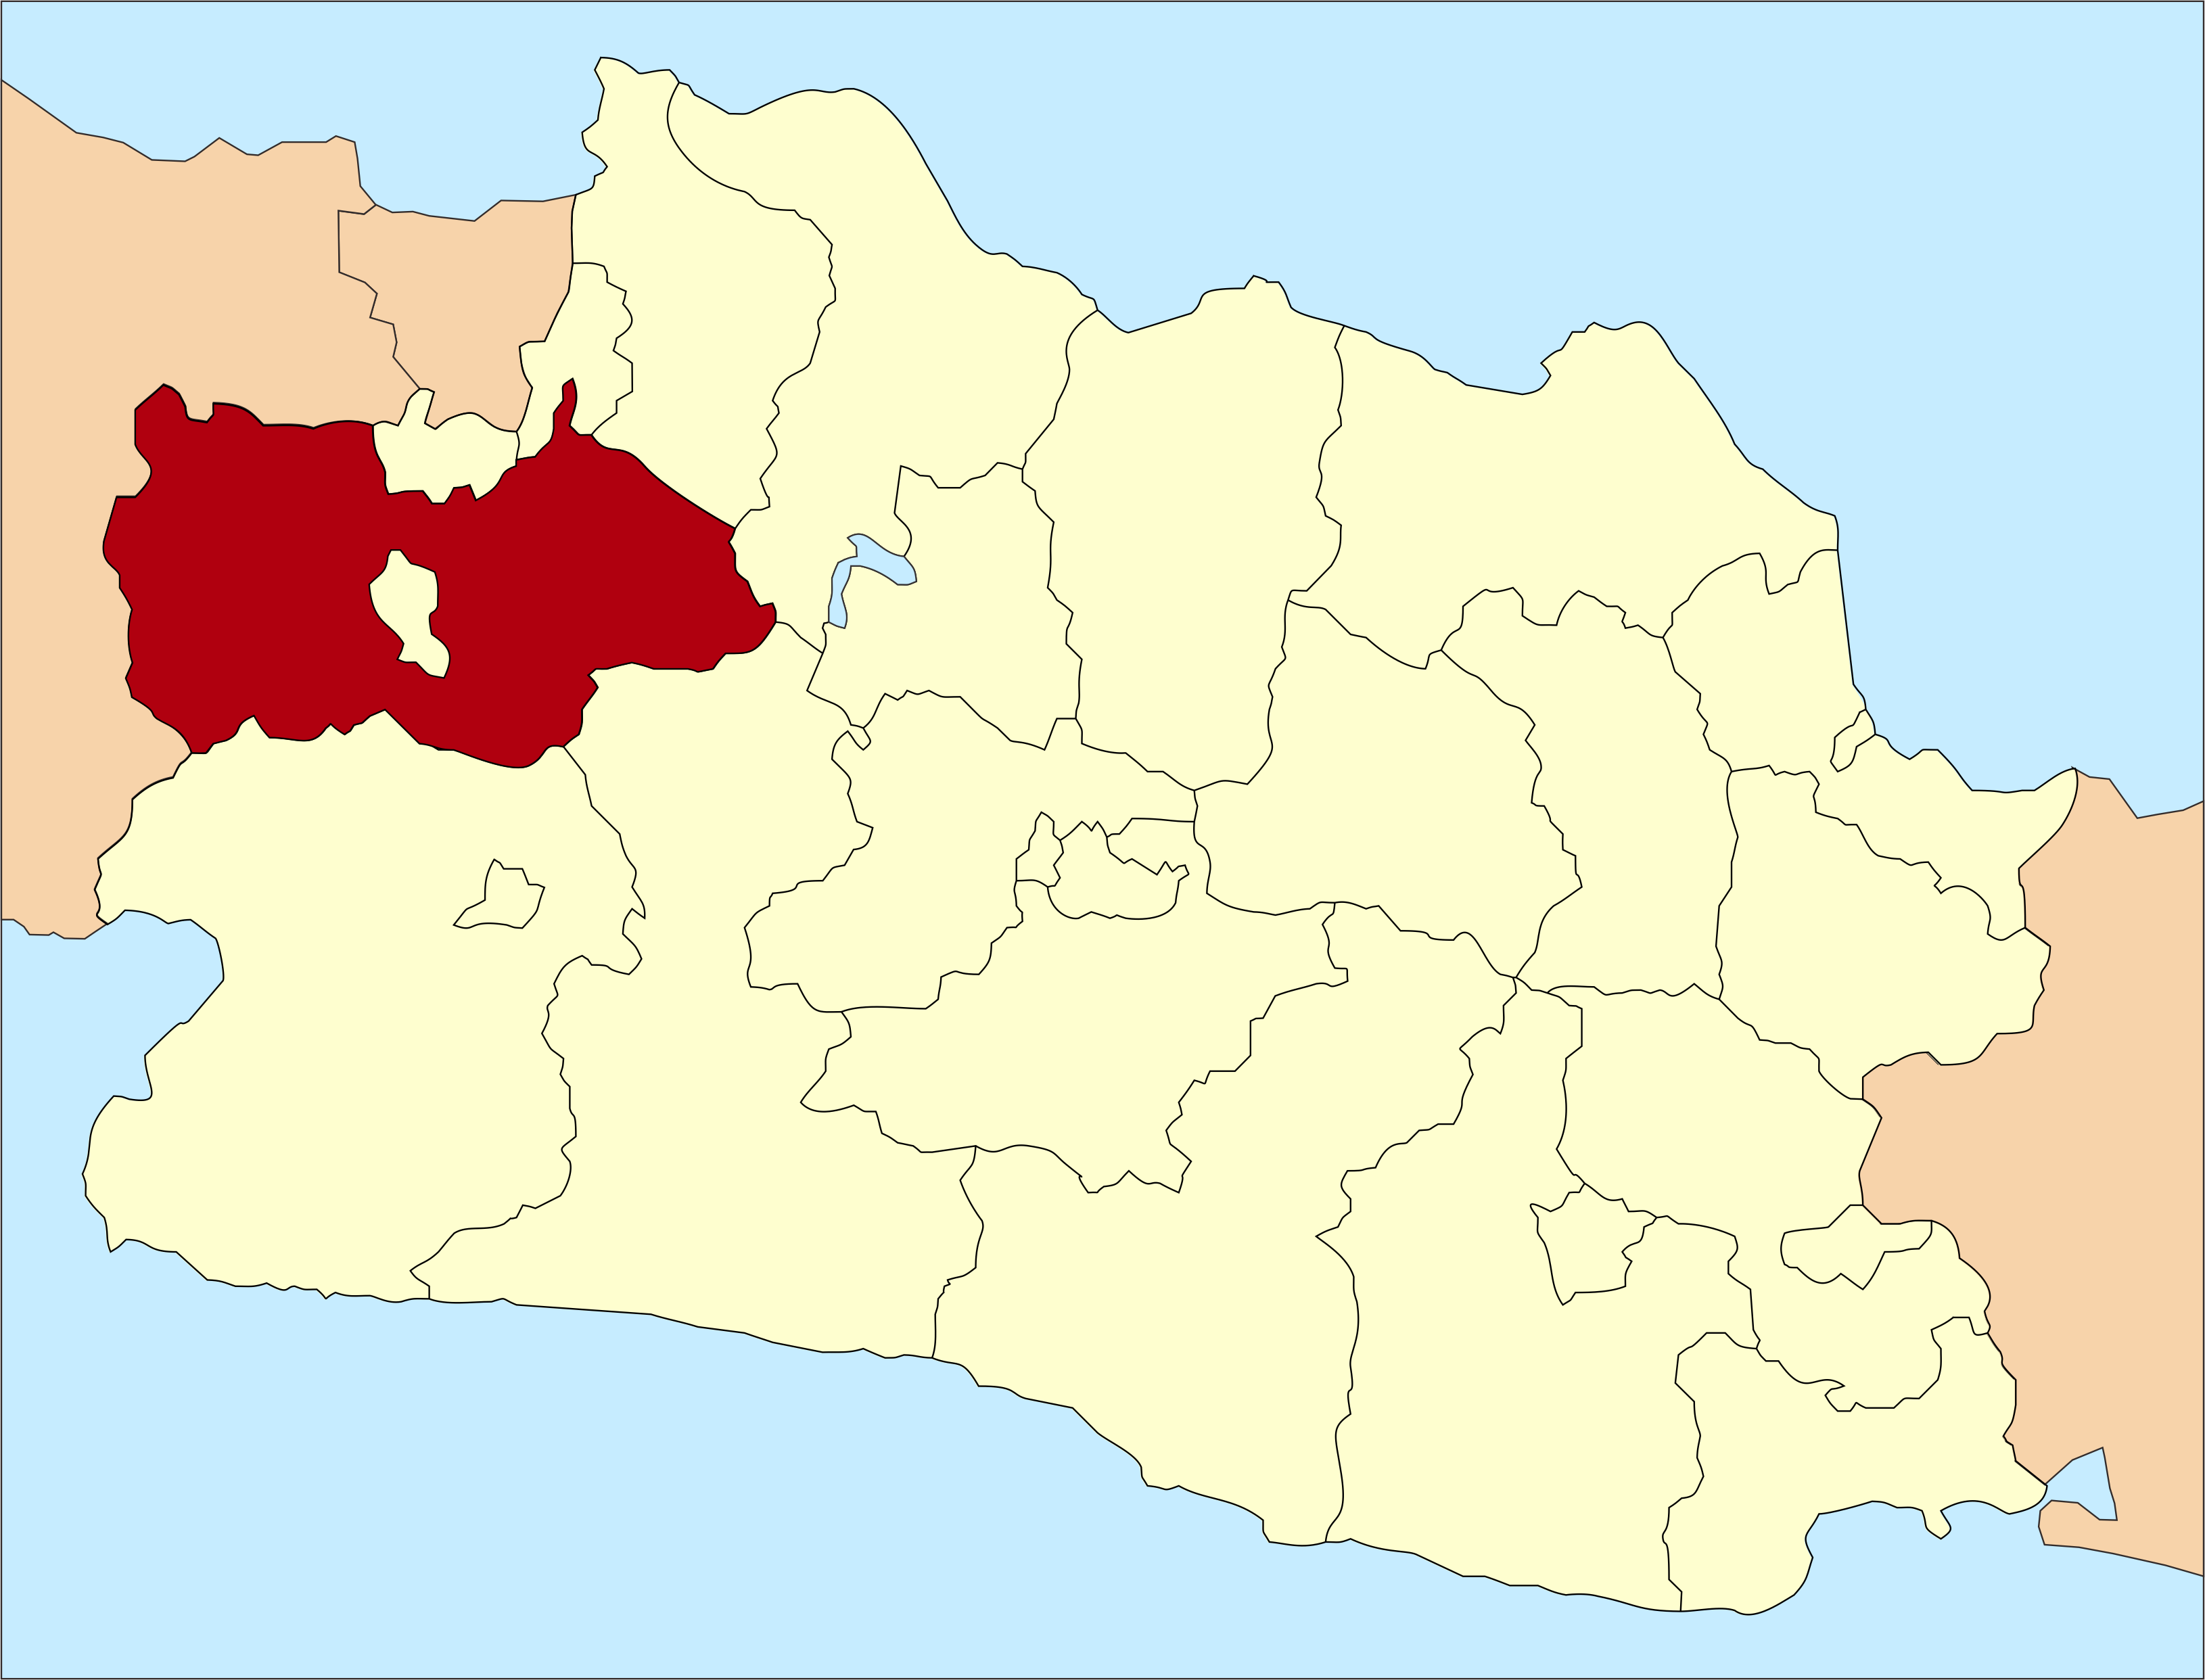 Bogor Regency in West Java province, south of Depok and DKI Jakarta